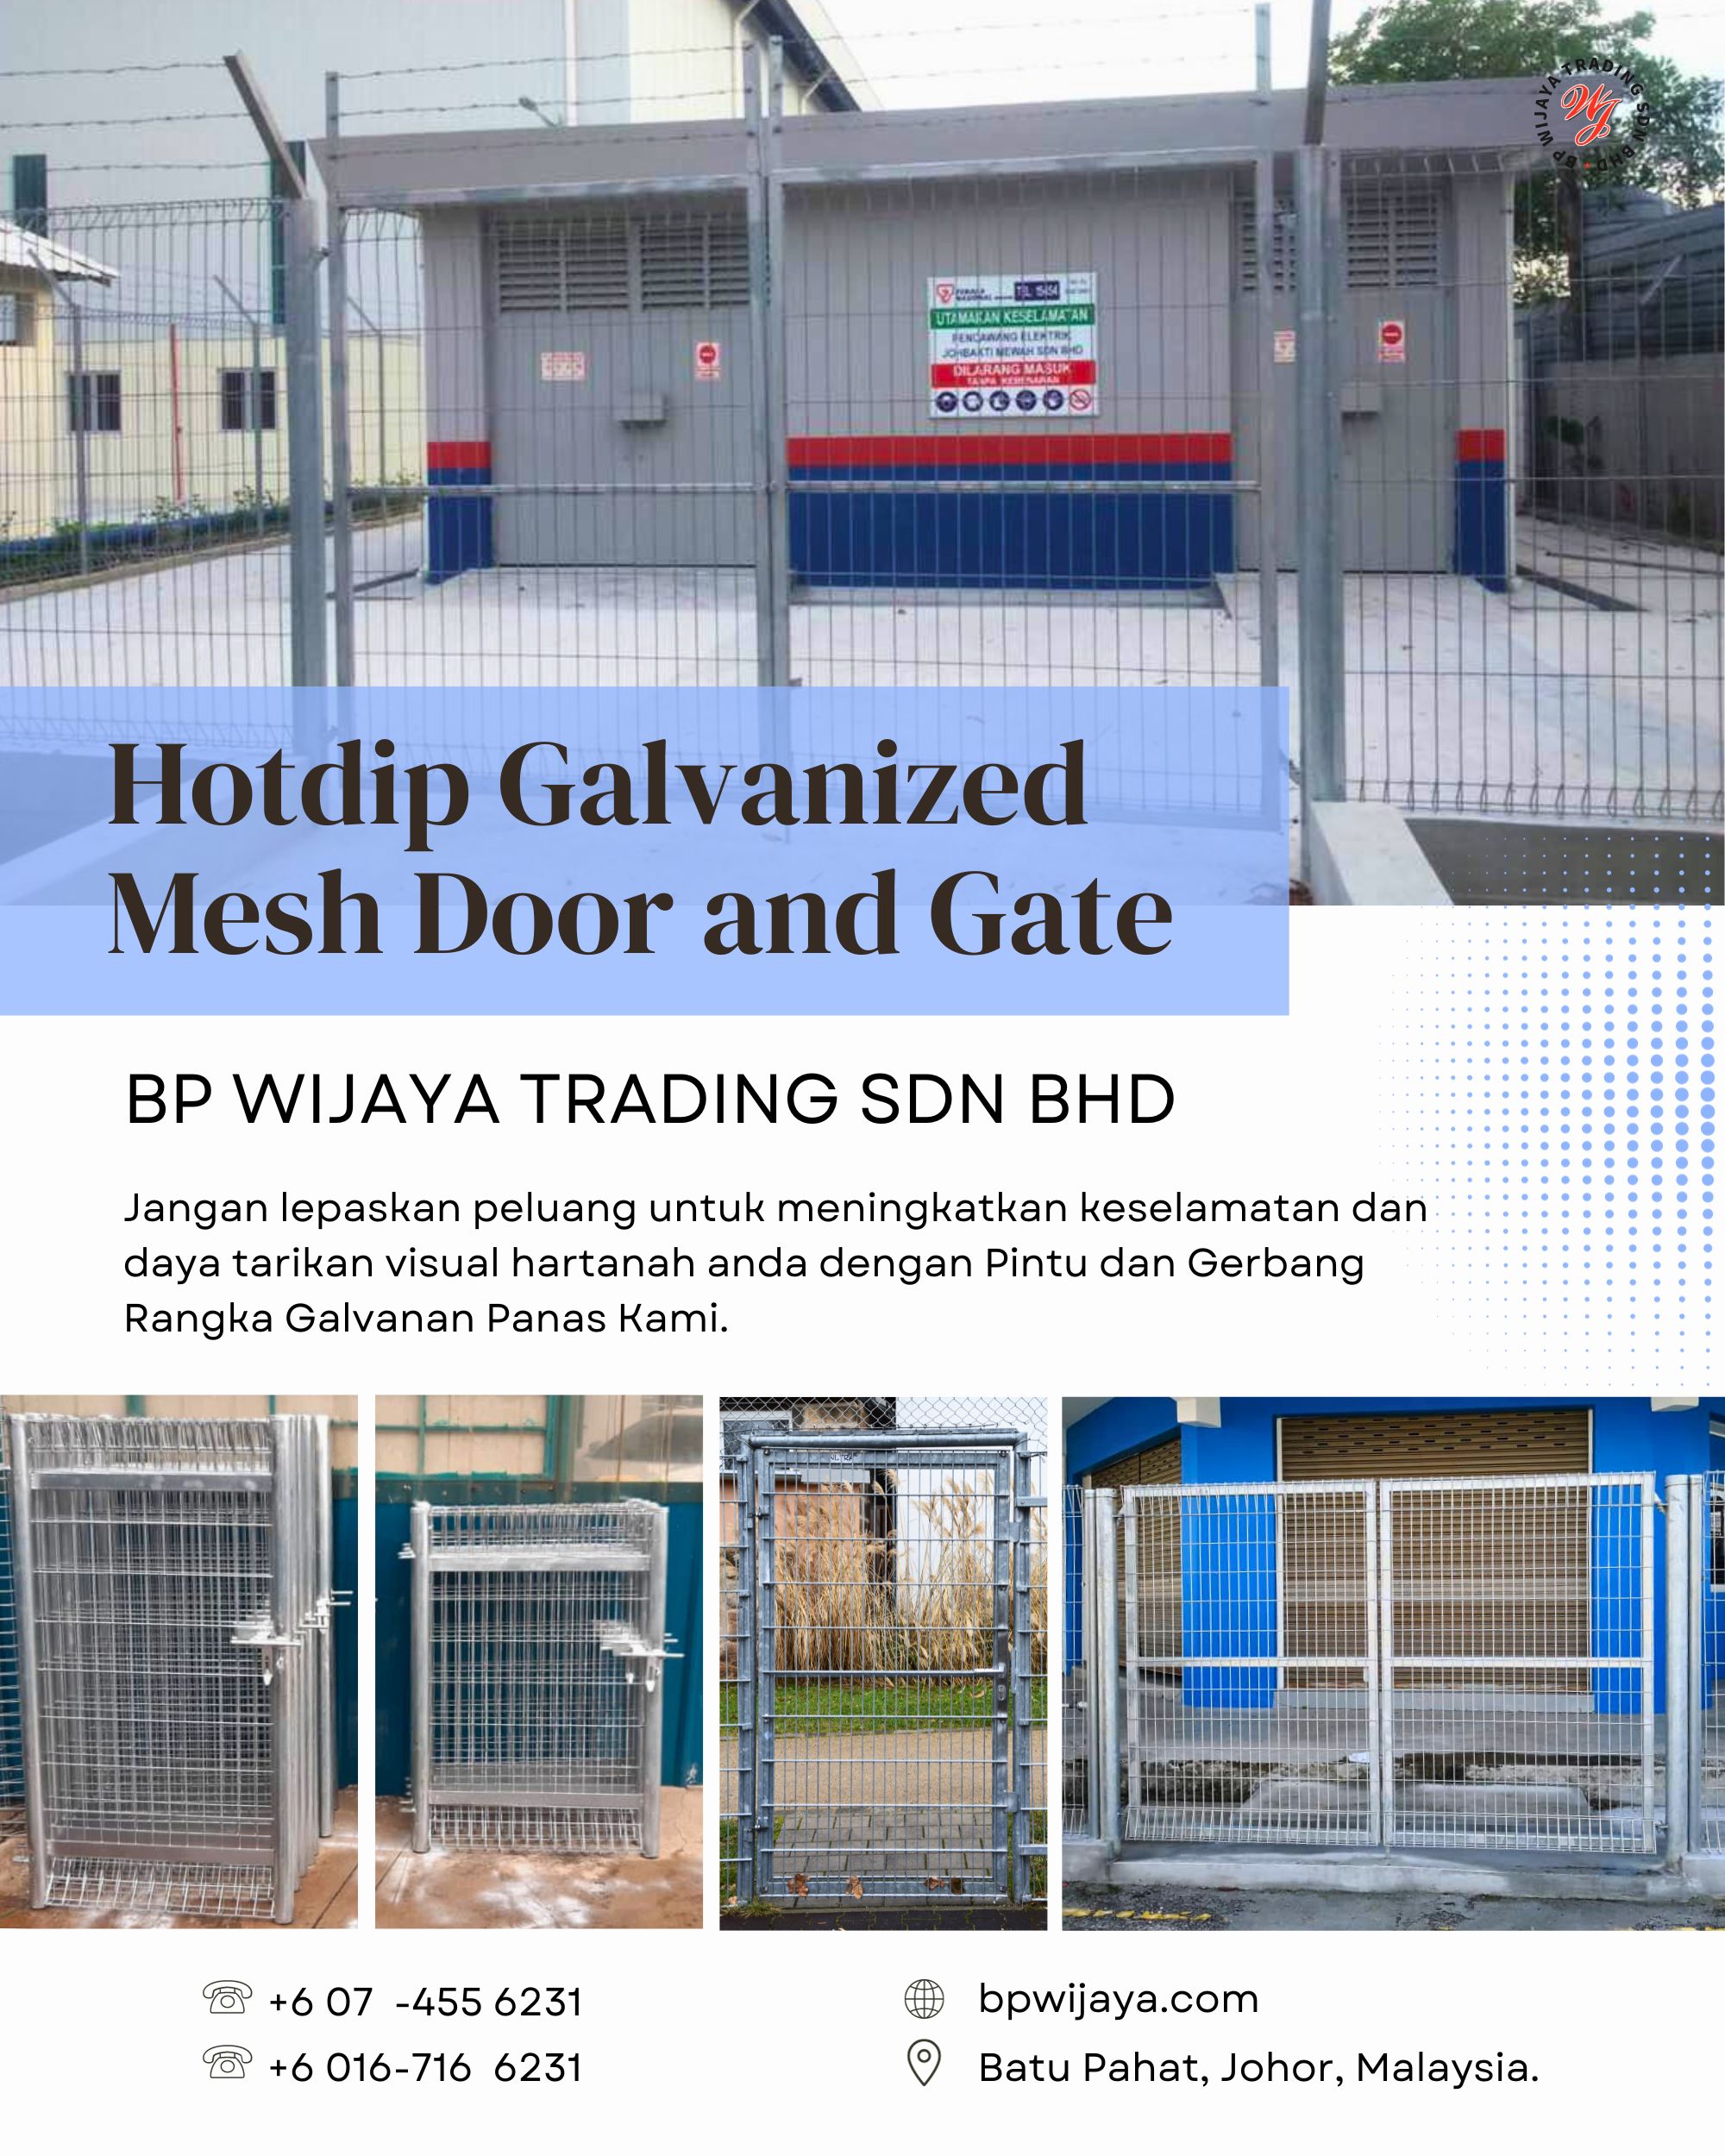 Hotdip Galvanized Mesh Door and Gate - BP Wijaya Trading Sdn Bhd Wire Mesh Manufacturer Malaysia